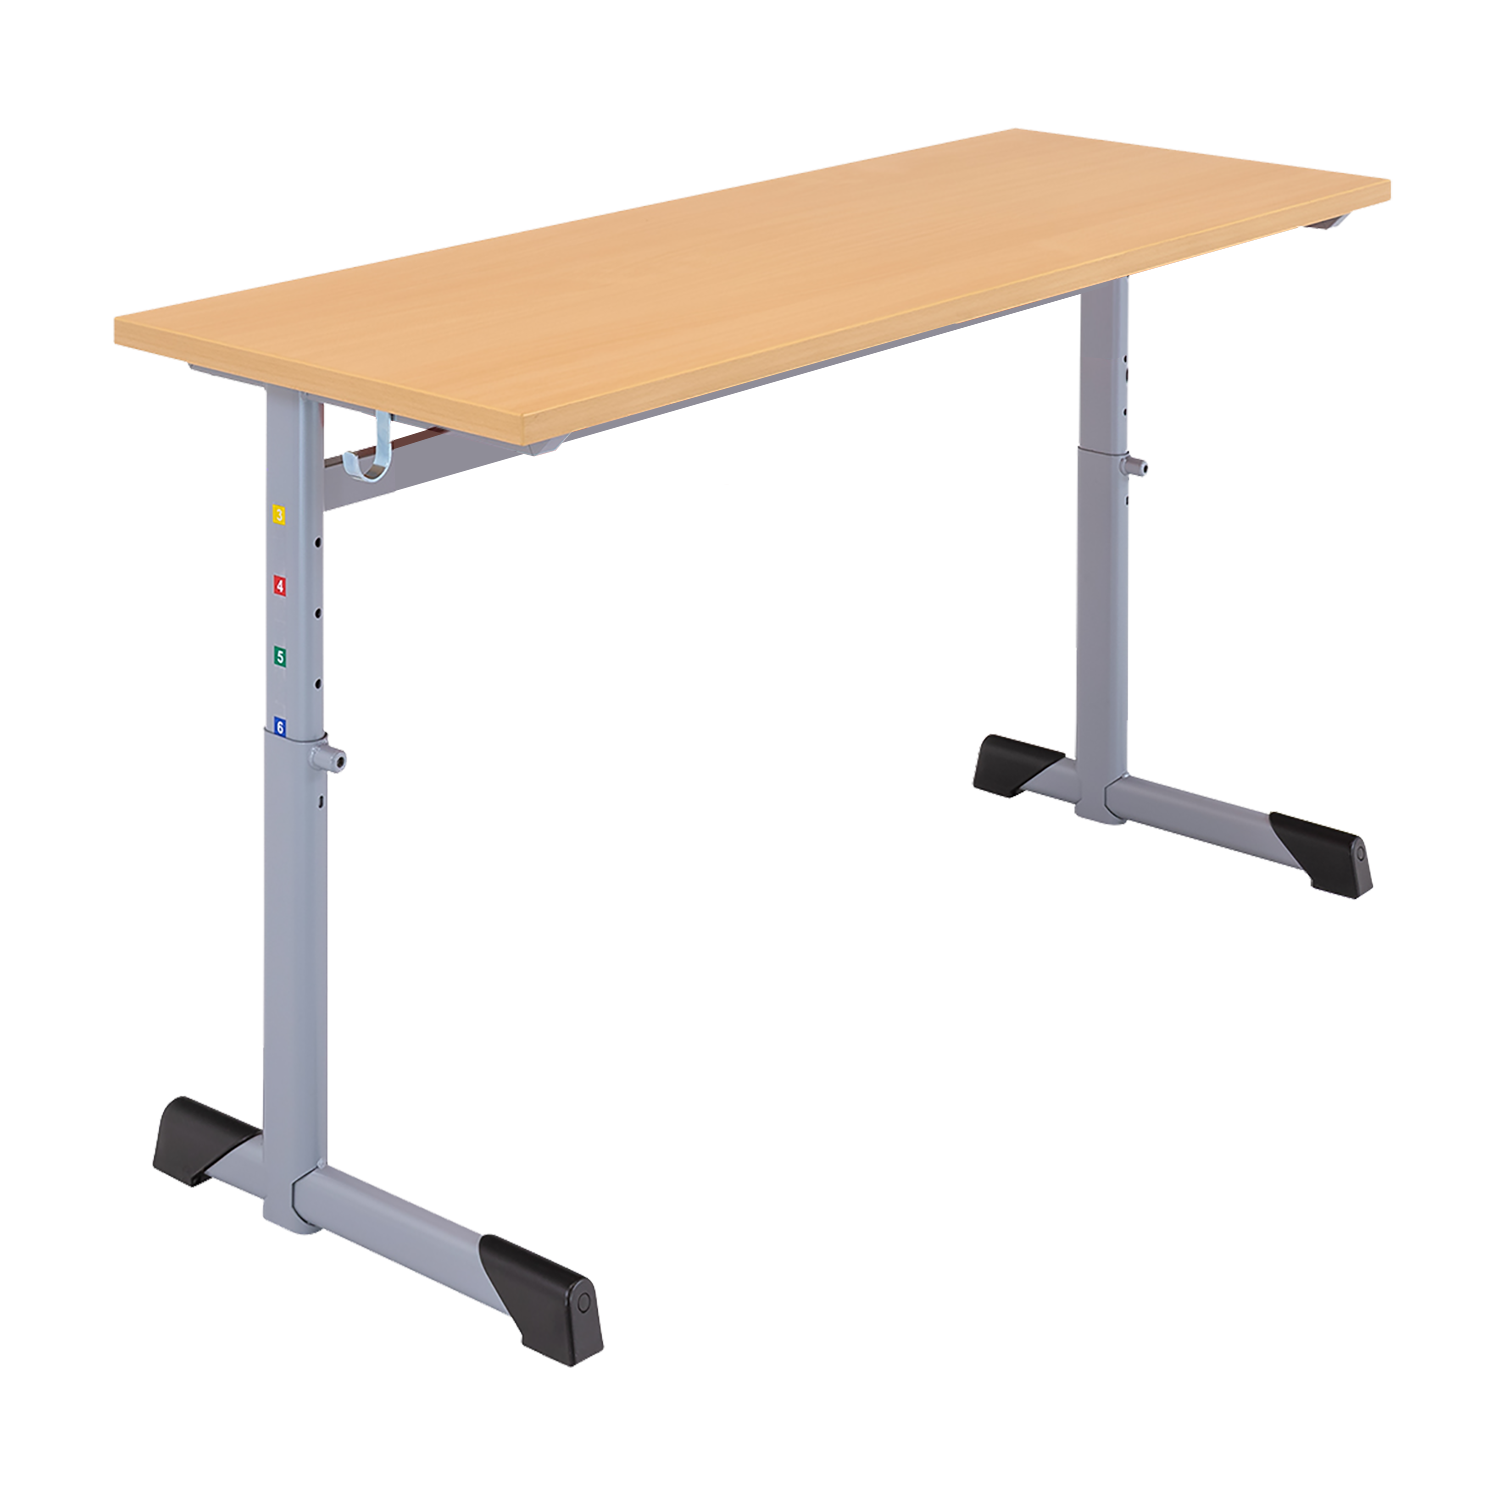 In hoogte verstelbaar 2-zits bureau, melamine tafelblad met ABS rand